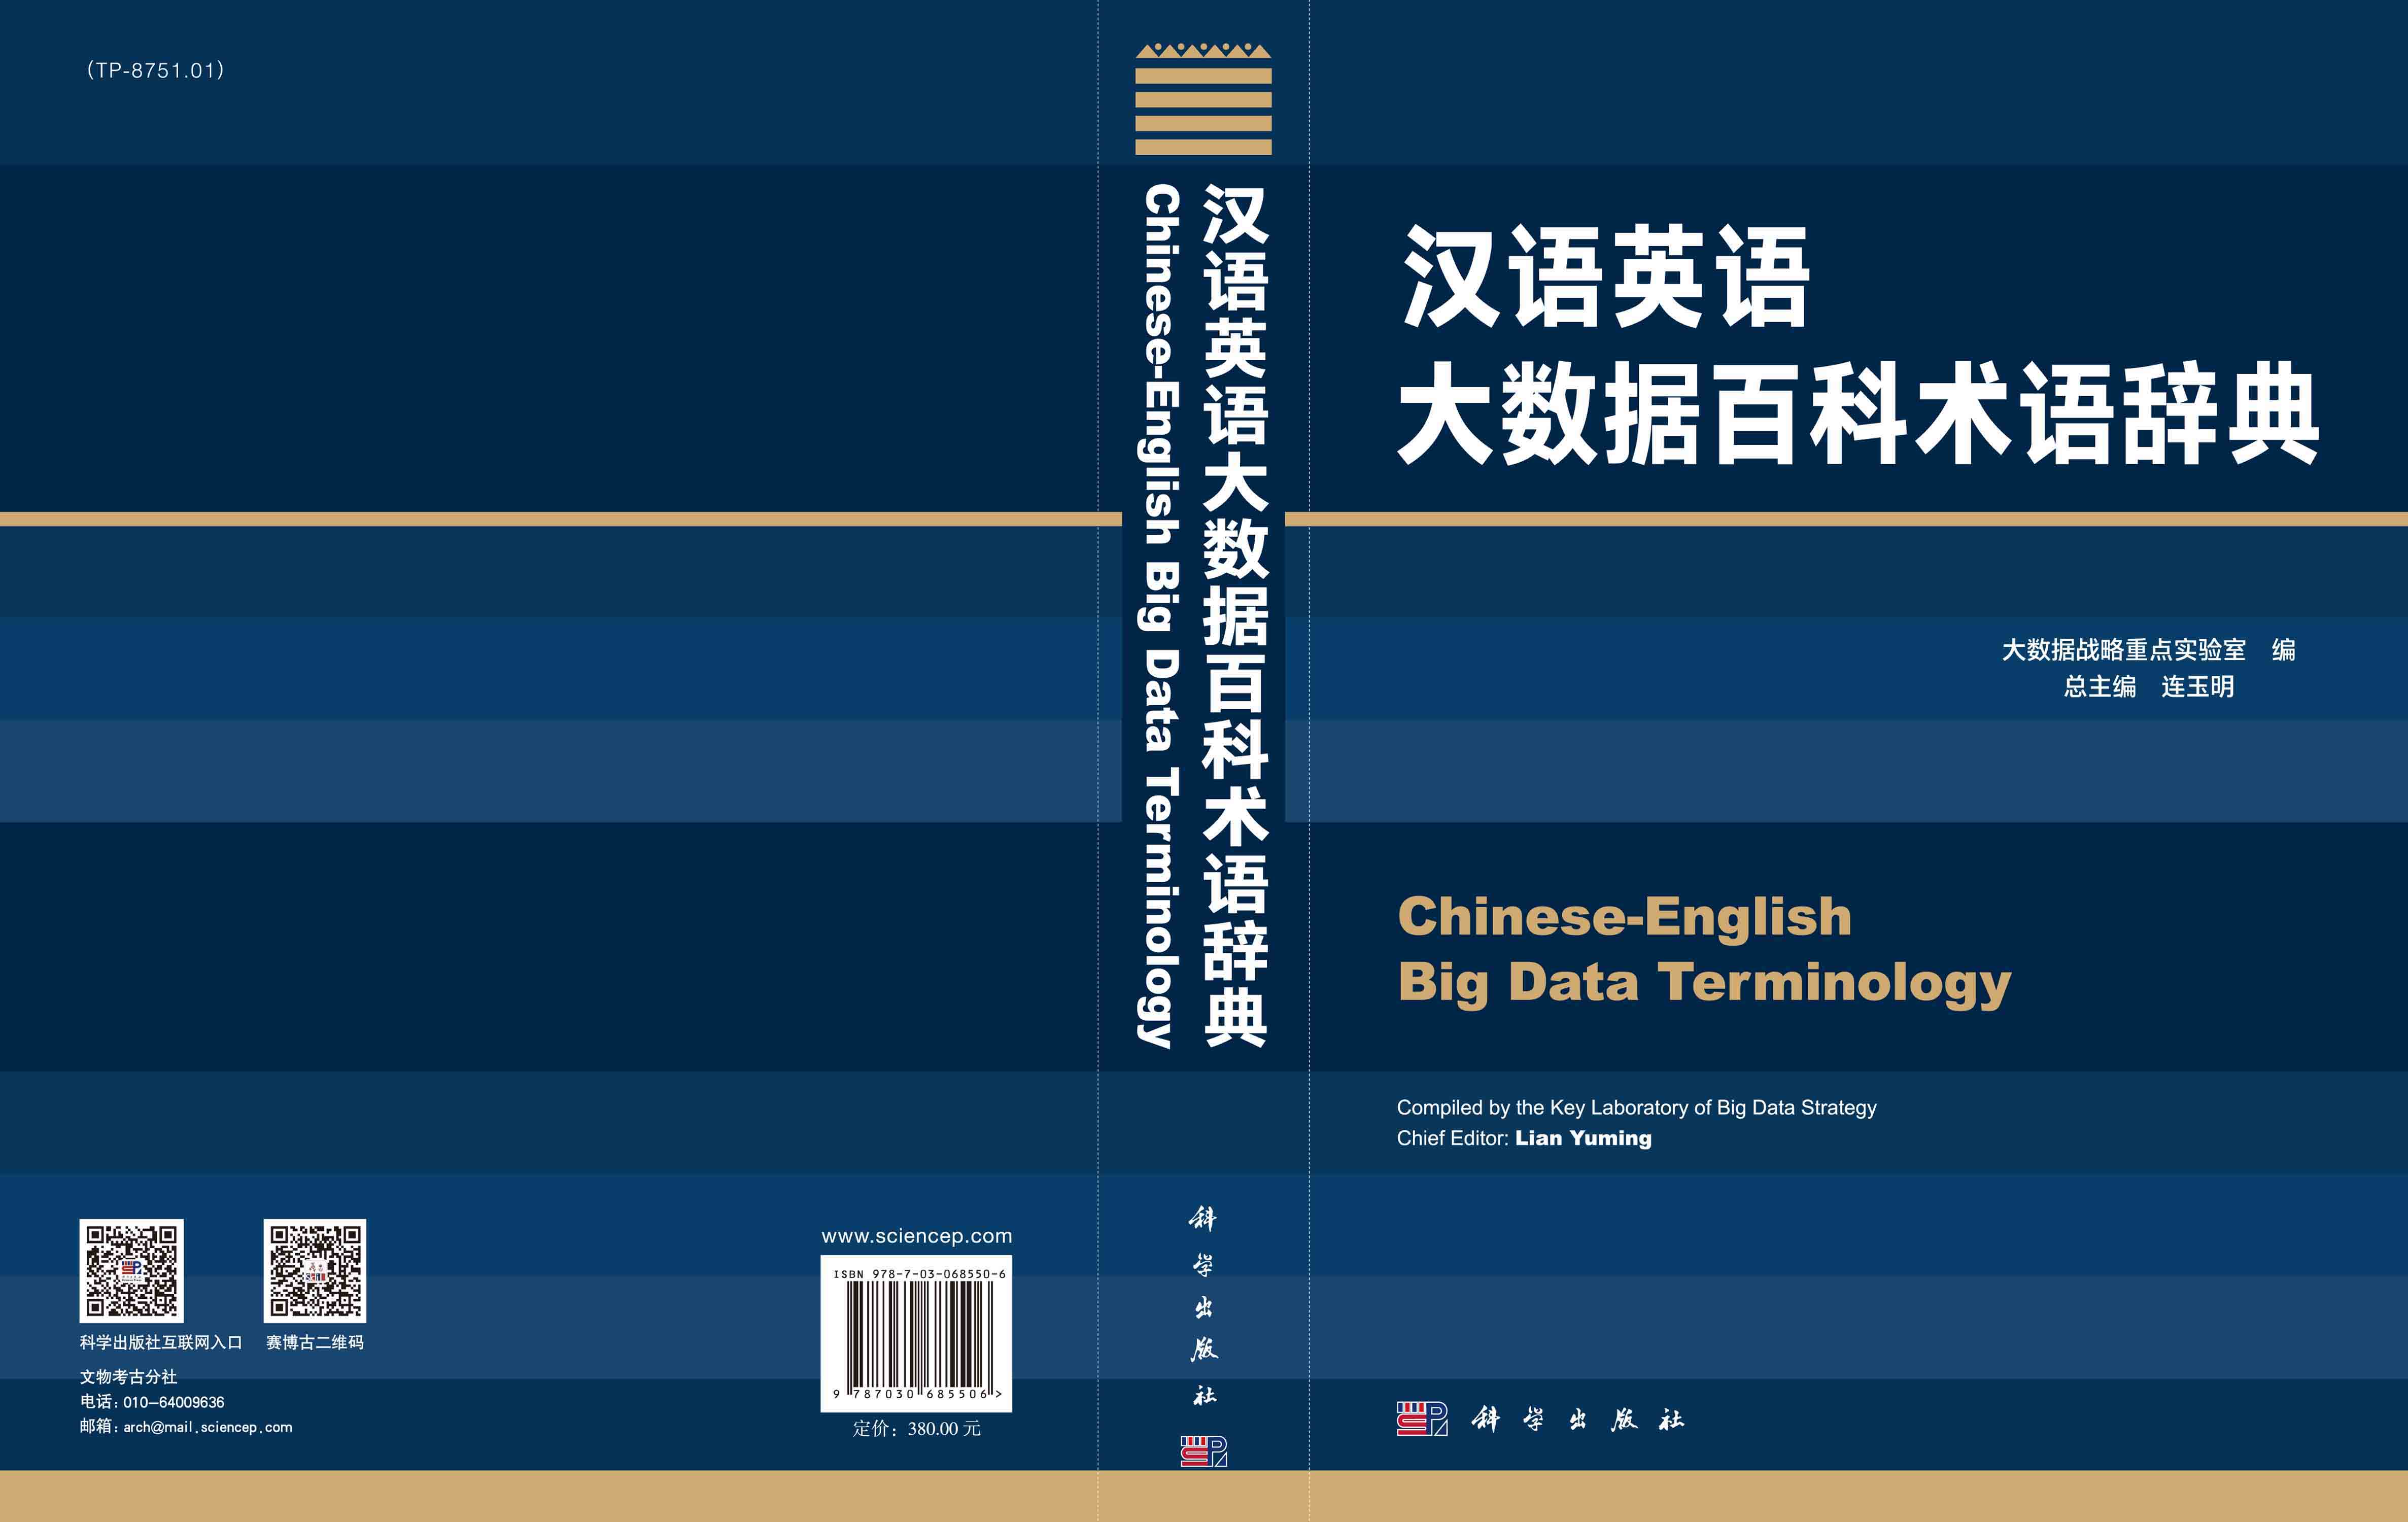 汉语英语大数据百科术语辞典